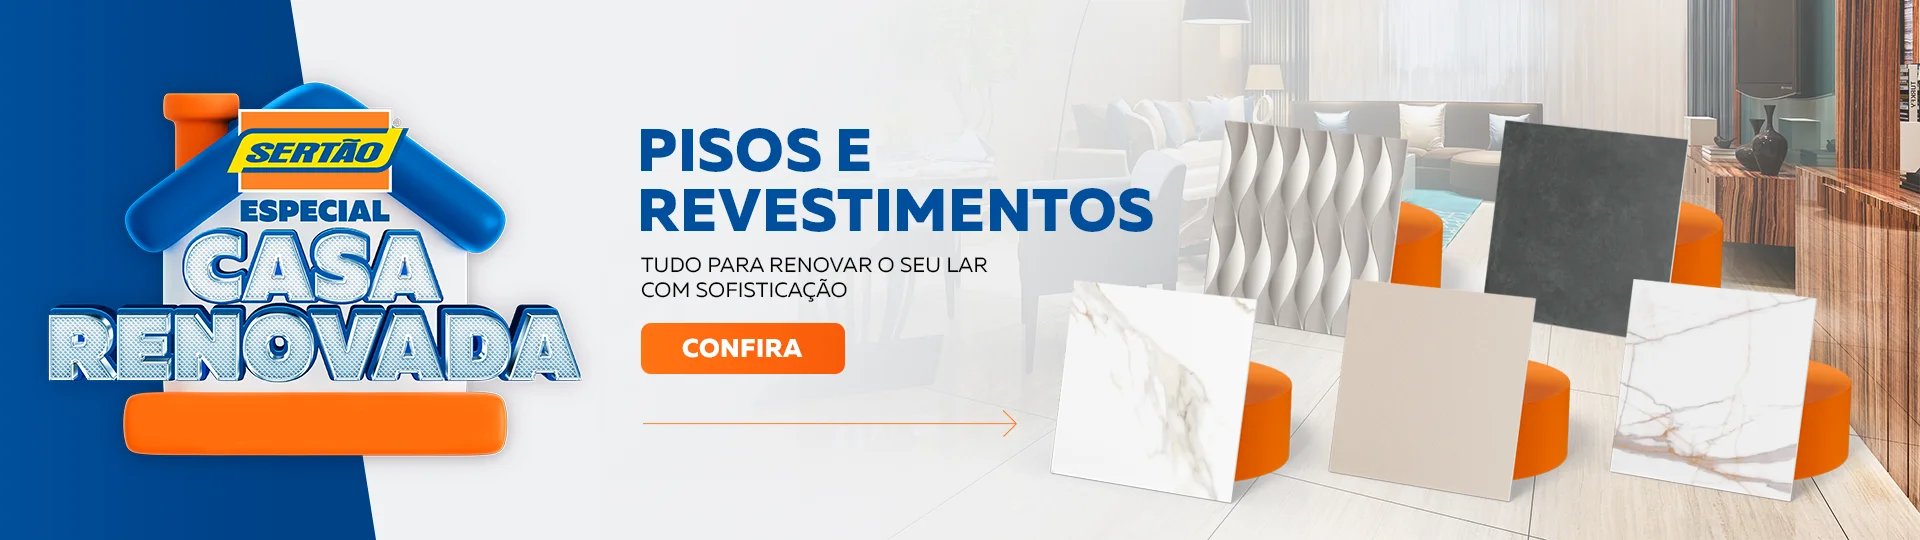 Pisos e Revestimentos Sertão - Desktop